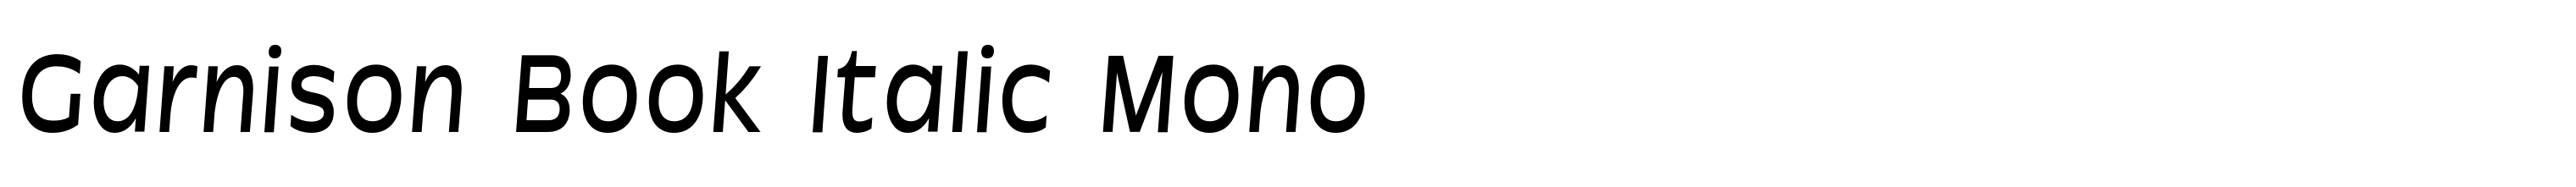 Garnison Book Italic Mono